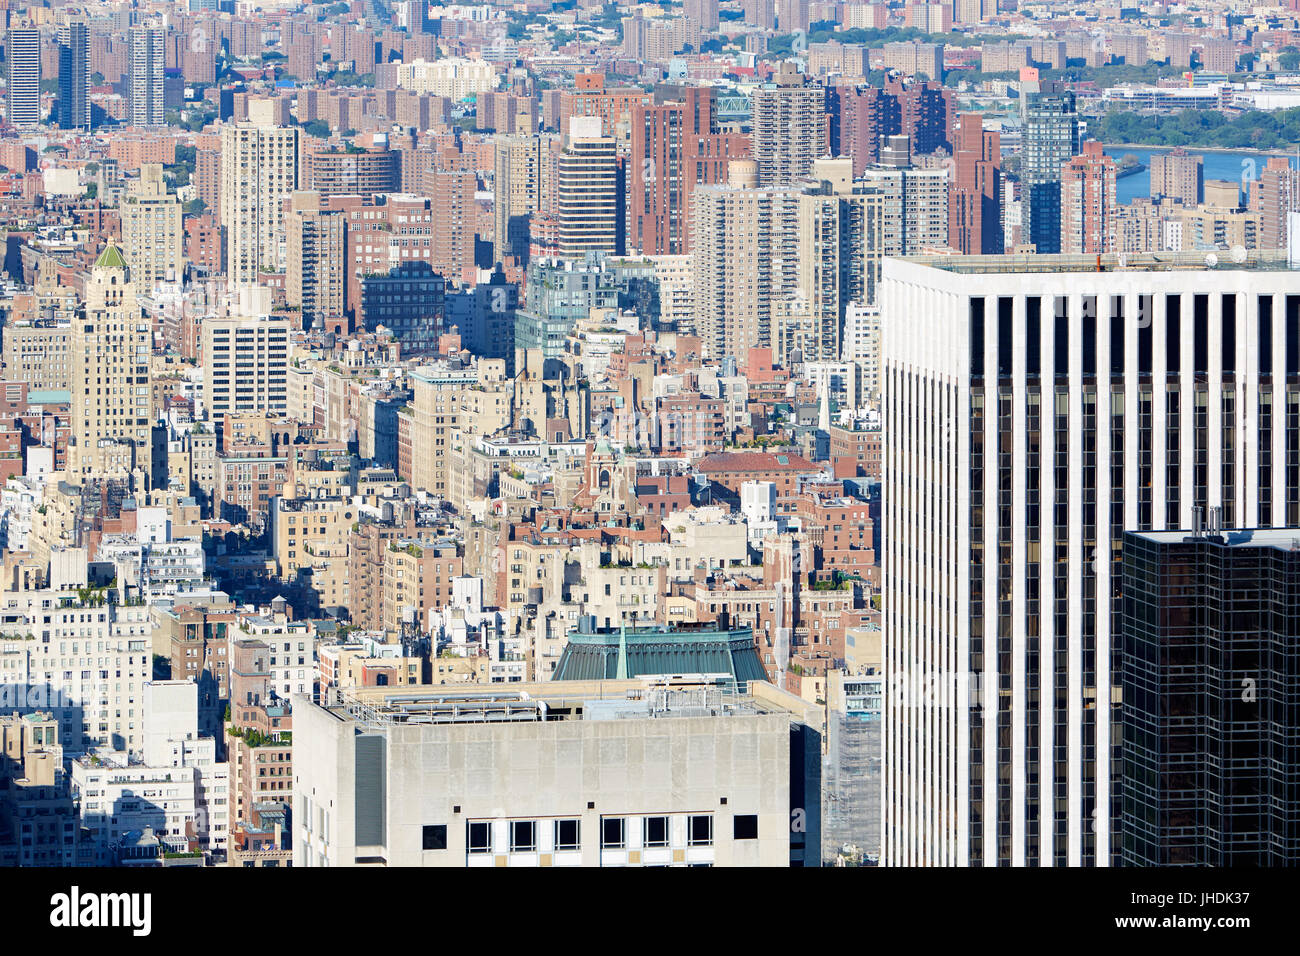 New York City midtown et uptown skyline vue aérienne avec des gratte-ciel dans une journée ensoleillée Banque D'Images